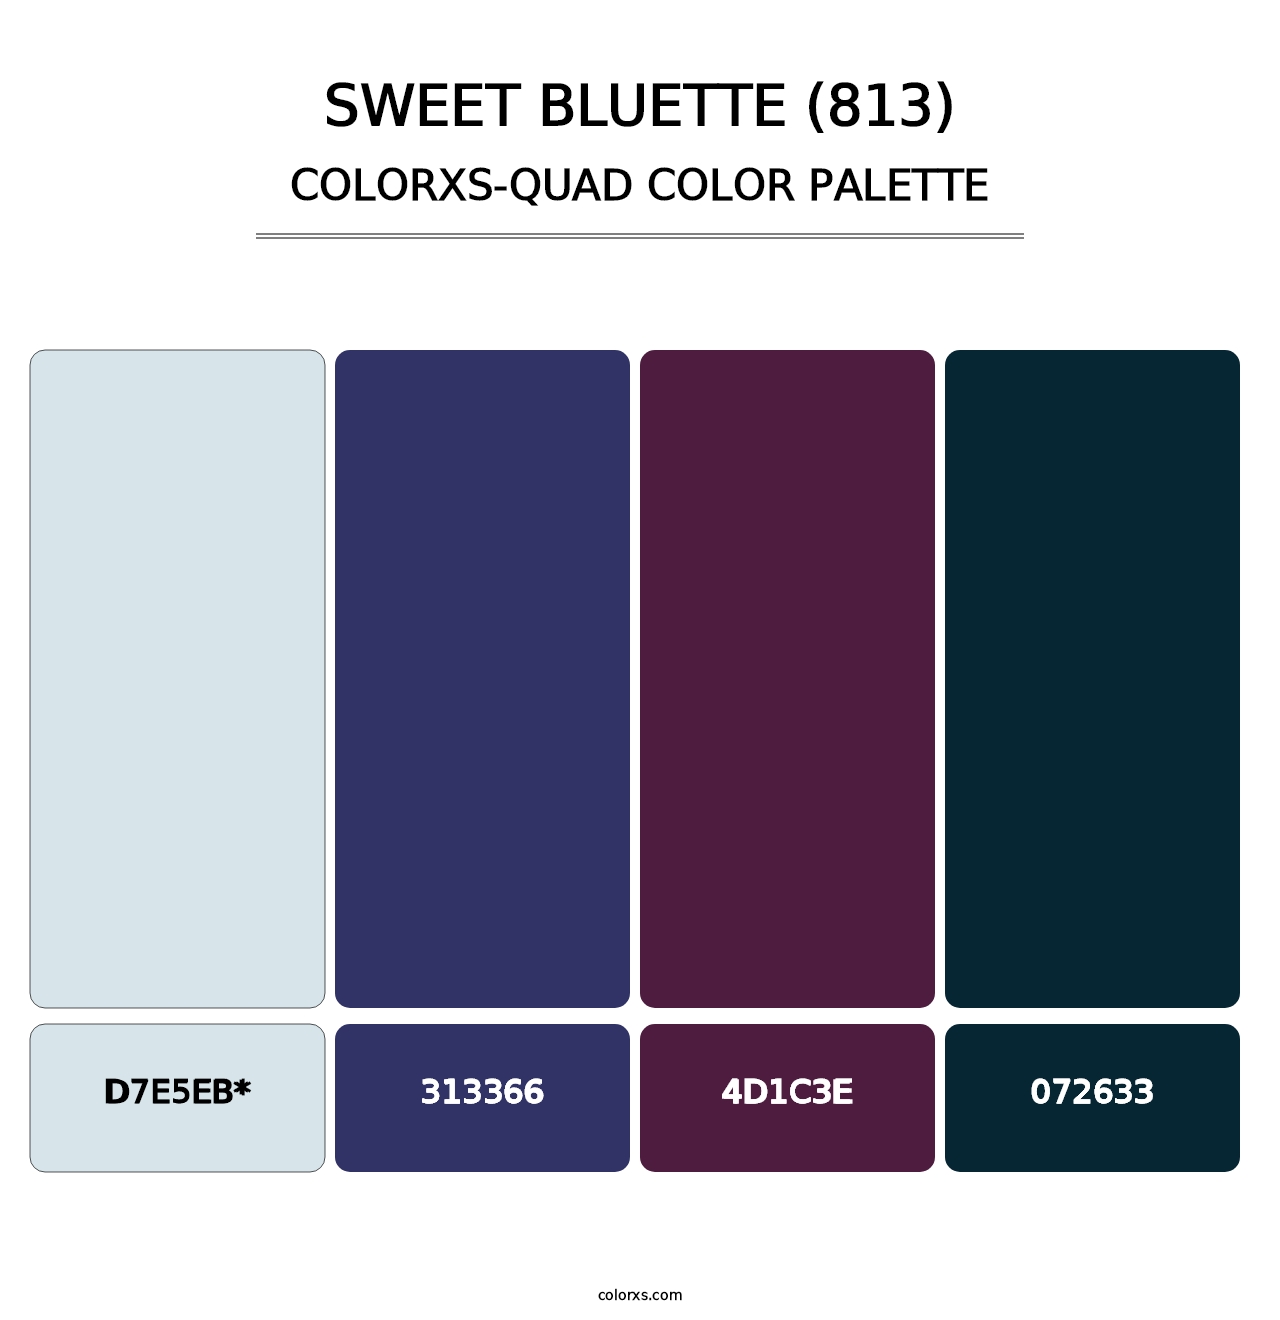 Sweet Bluette (813) - Colorxs Quad Palette